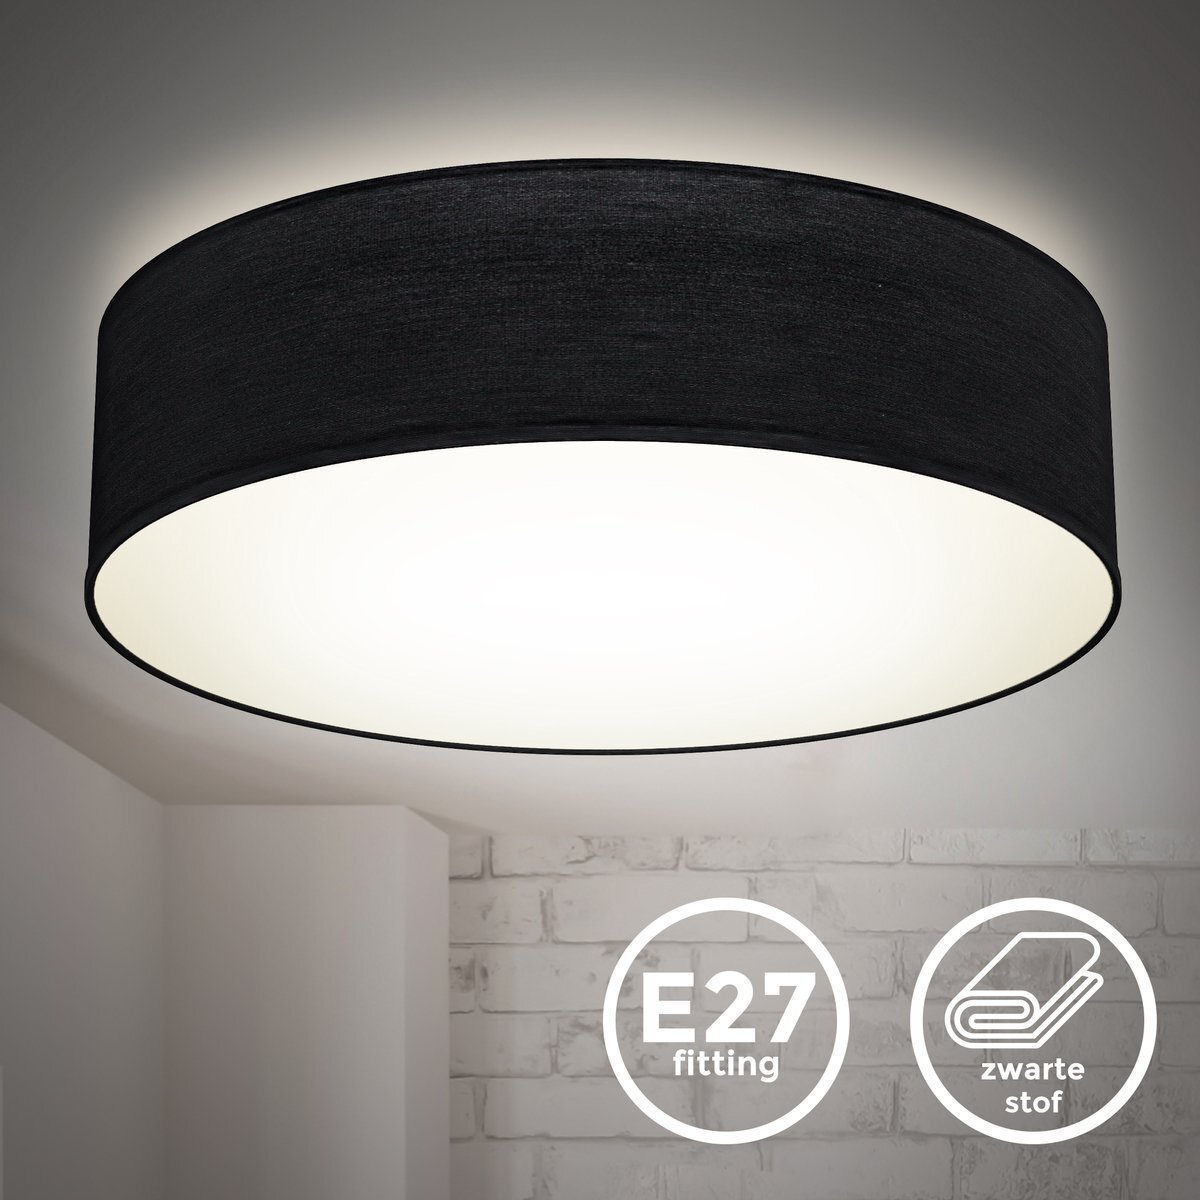 B.K.Licht - Decoratieve Plafondlamp - Ø38cm - modern - voor binnen - zwart - met E27 fitting - excl. lichtbronnen